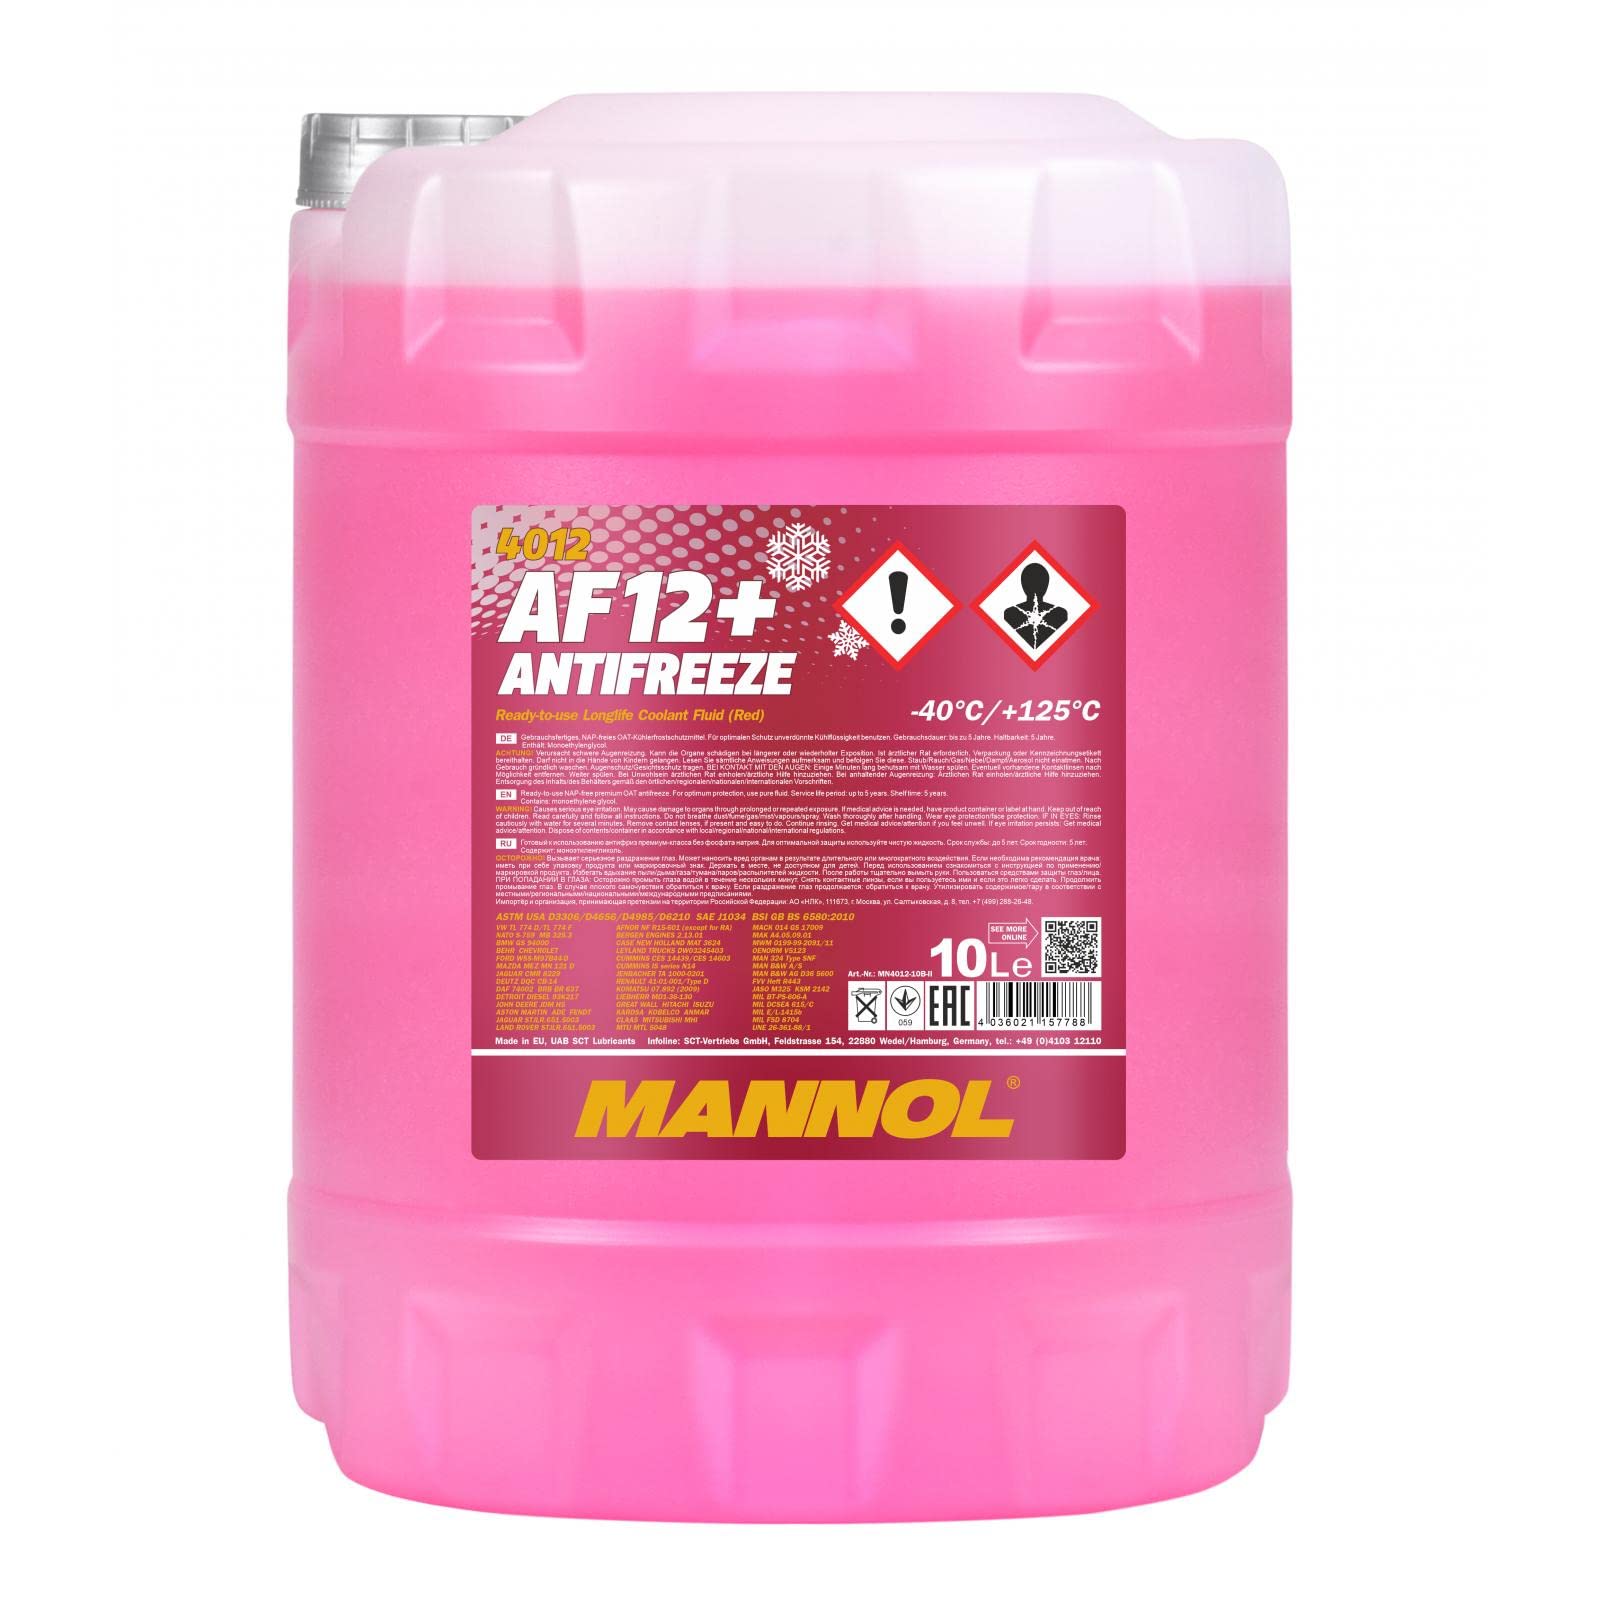 MANNOL Antifreeze AF12+ Kühlerfrostschutz 10 Liter, Rosa bis-40°C für G12+ Frostschutz von MANNOL